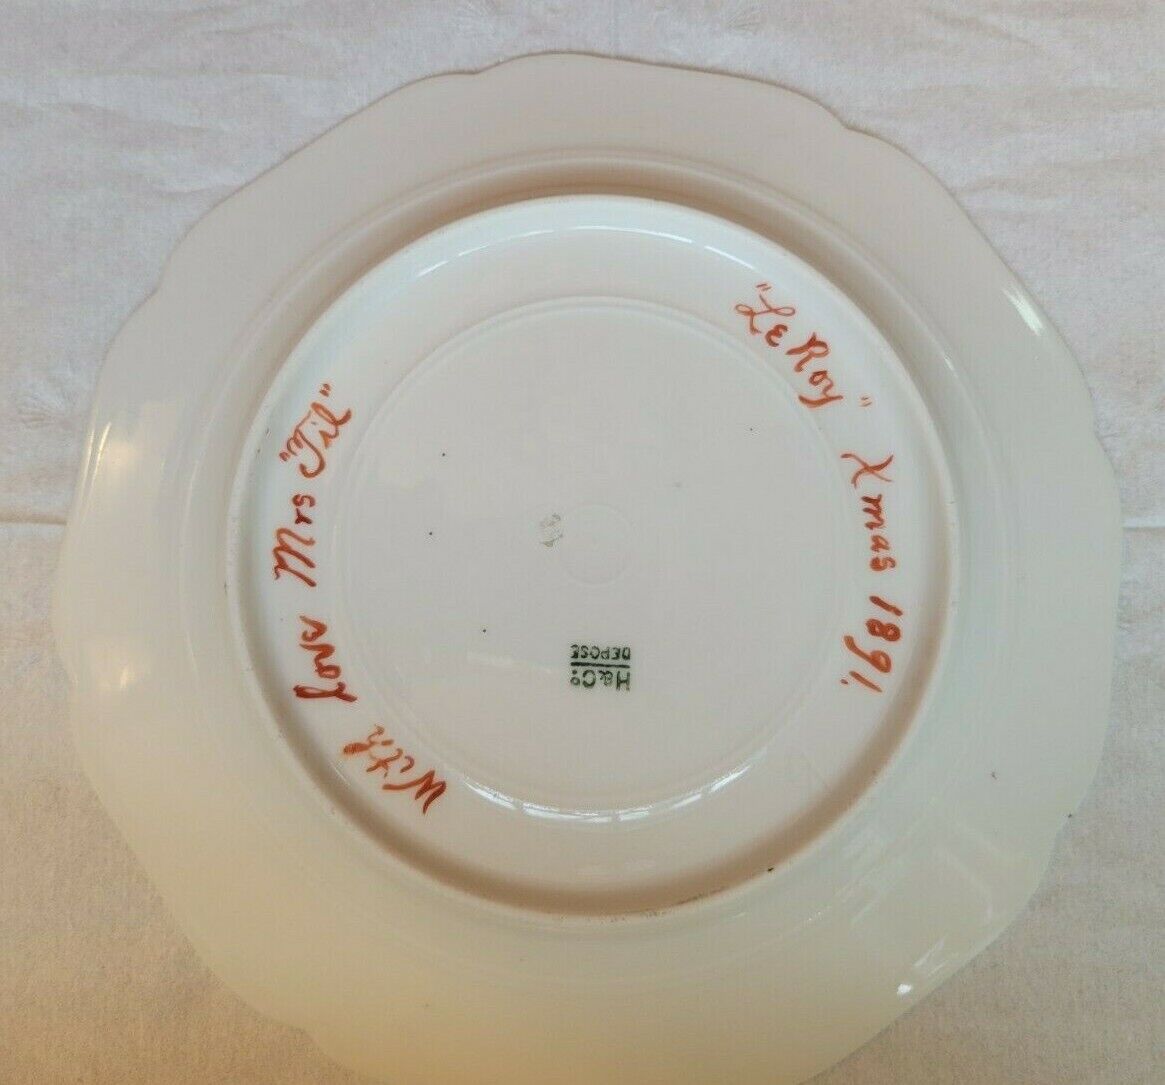 ANTIQUE HAVILAND LIMOGES H & CO. FLORAL PLATE 1887 HAND INSCRIBED LEROY ON BACK